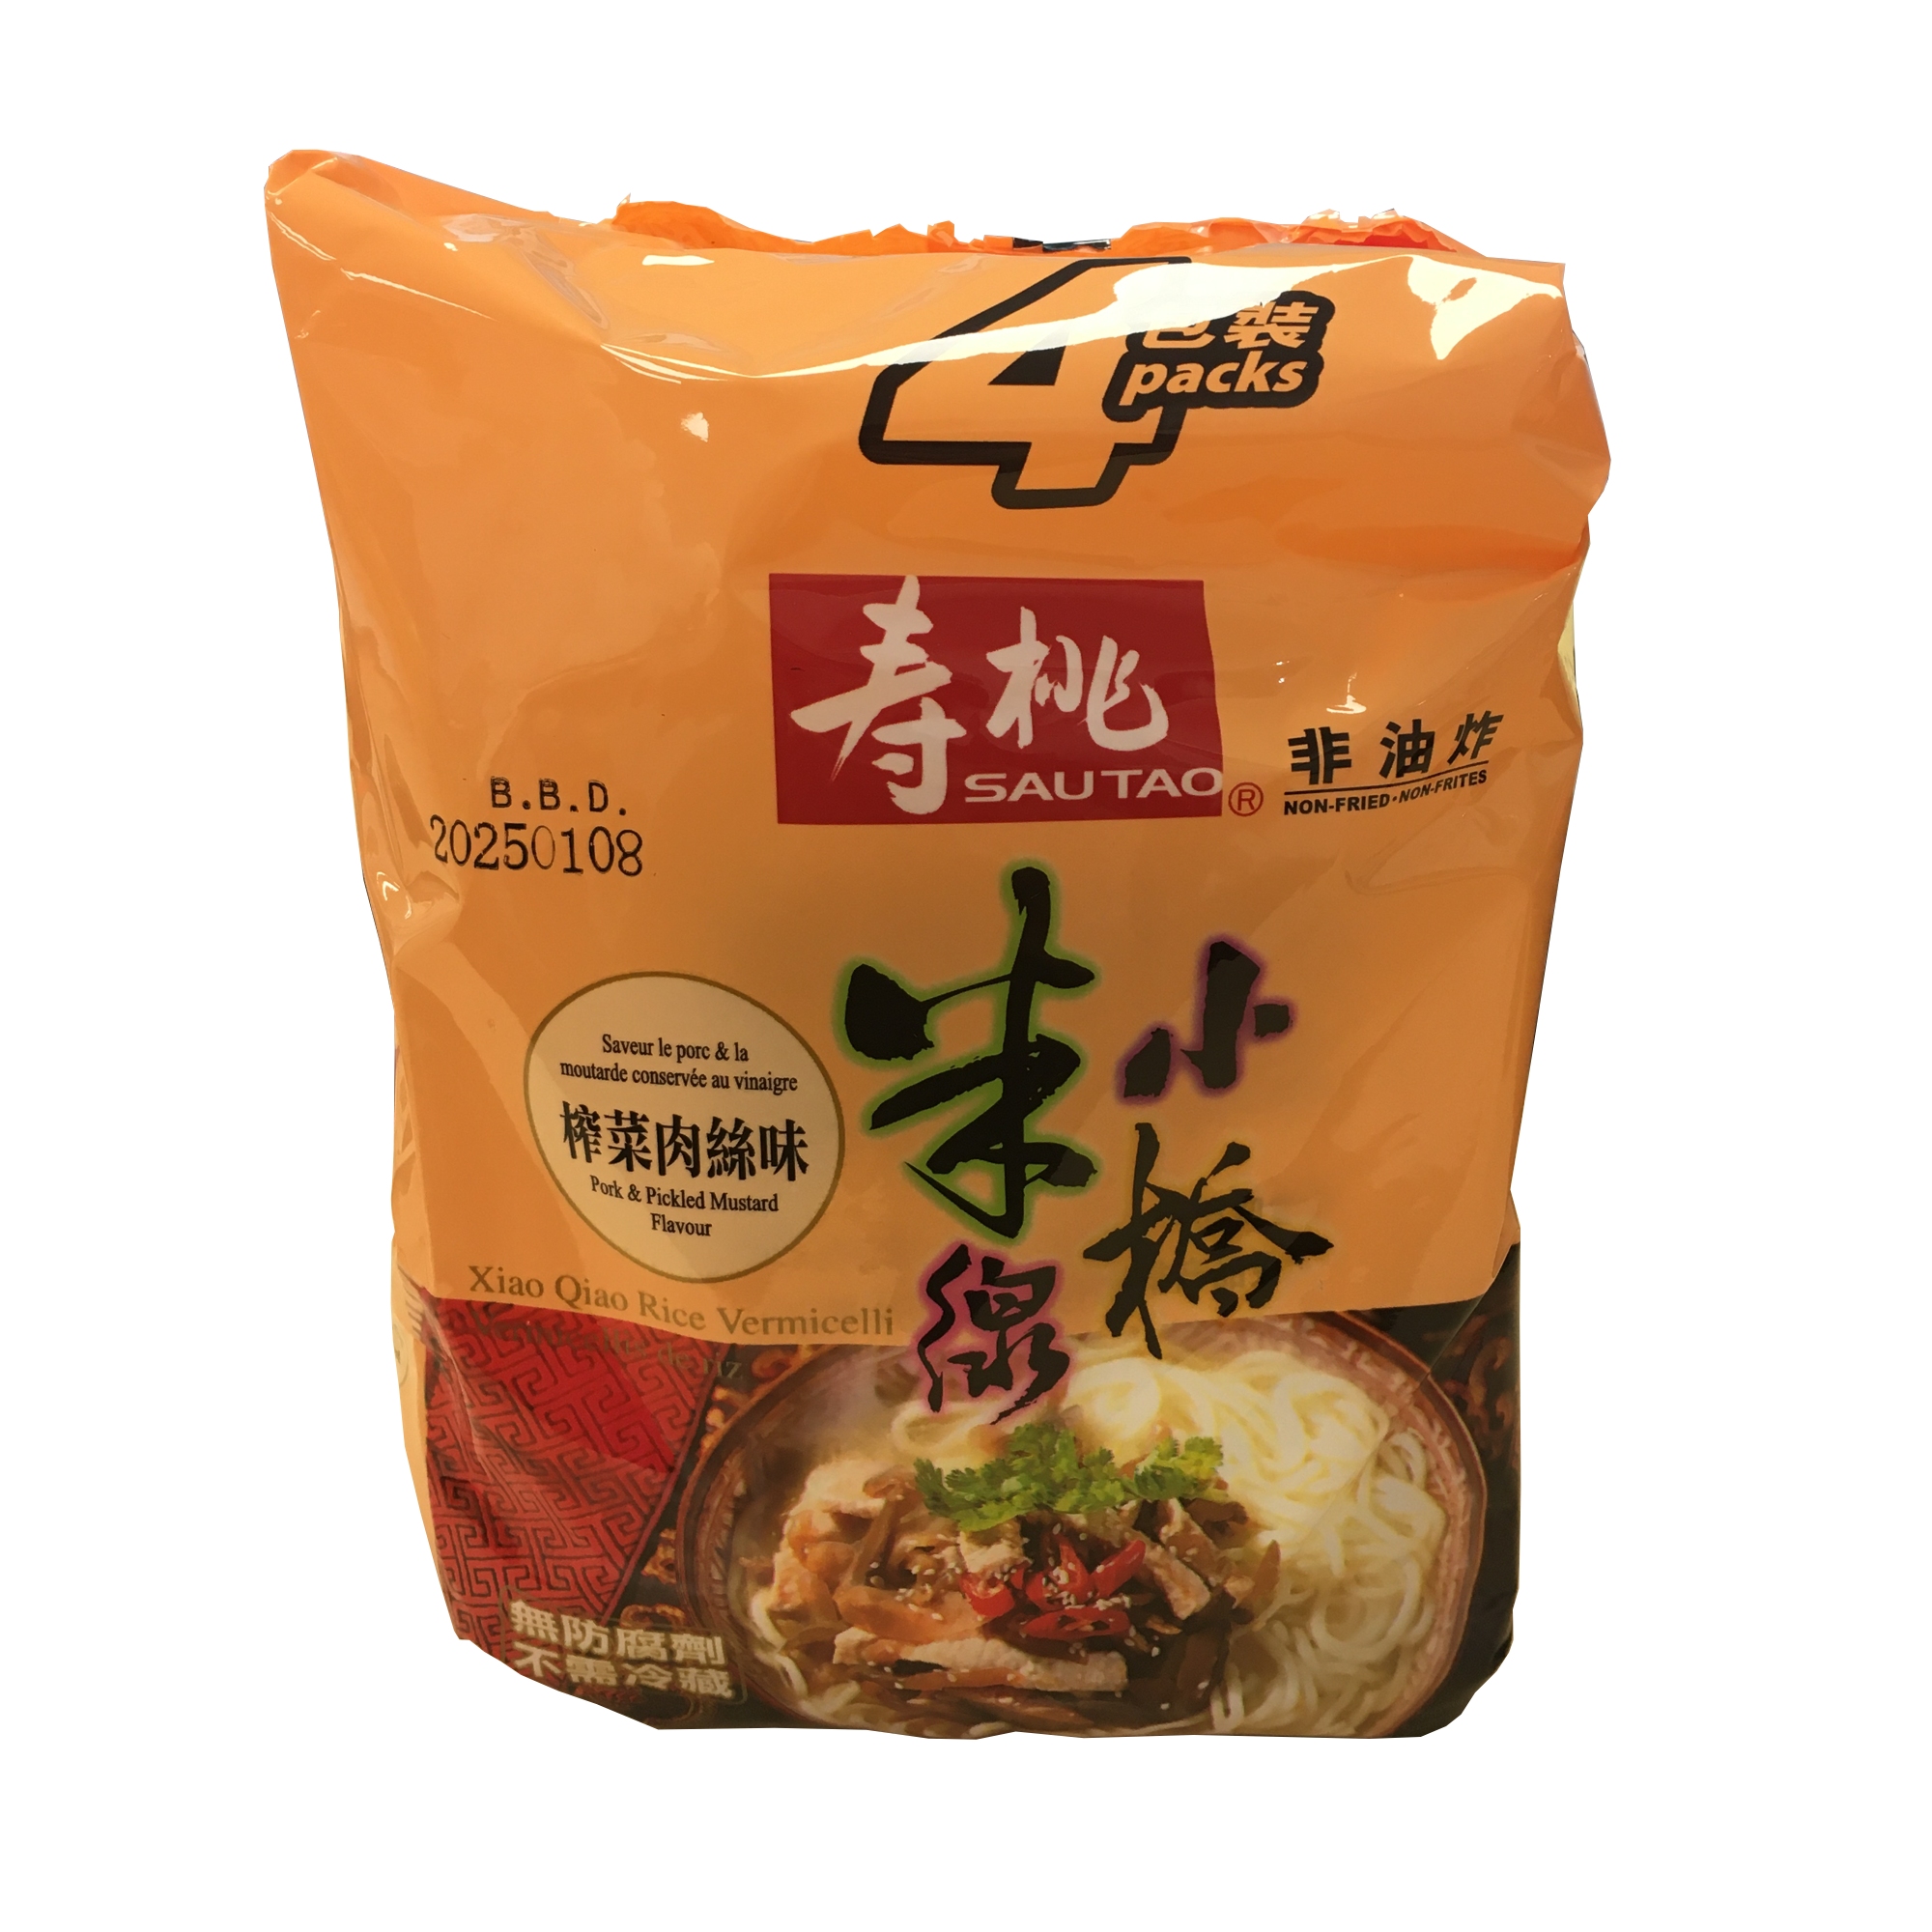 壽桃小橋米線炸菜肉絲味4包裝 ND137063